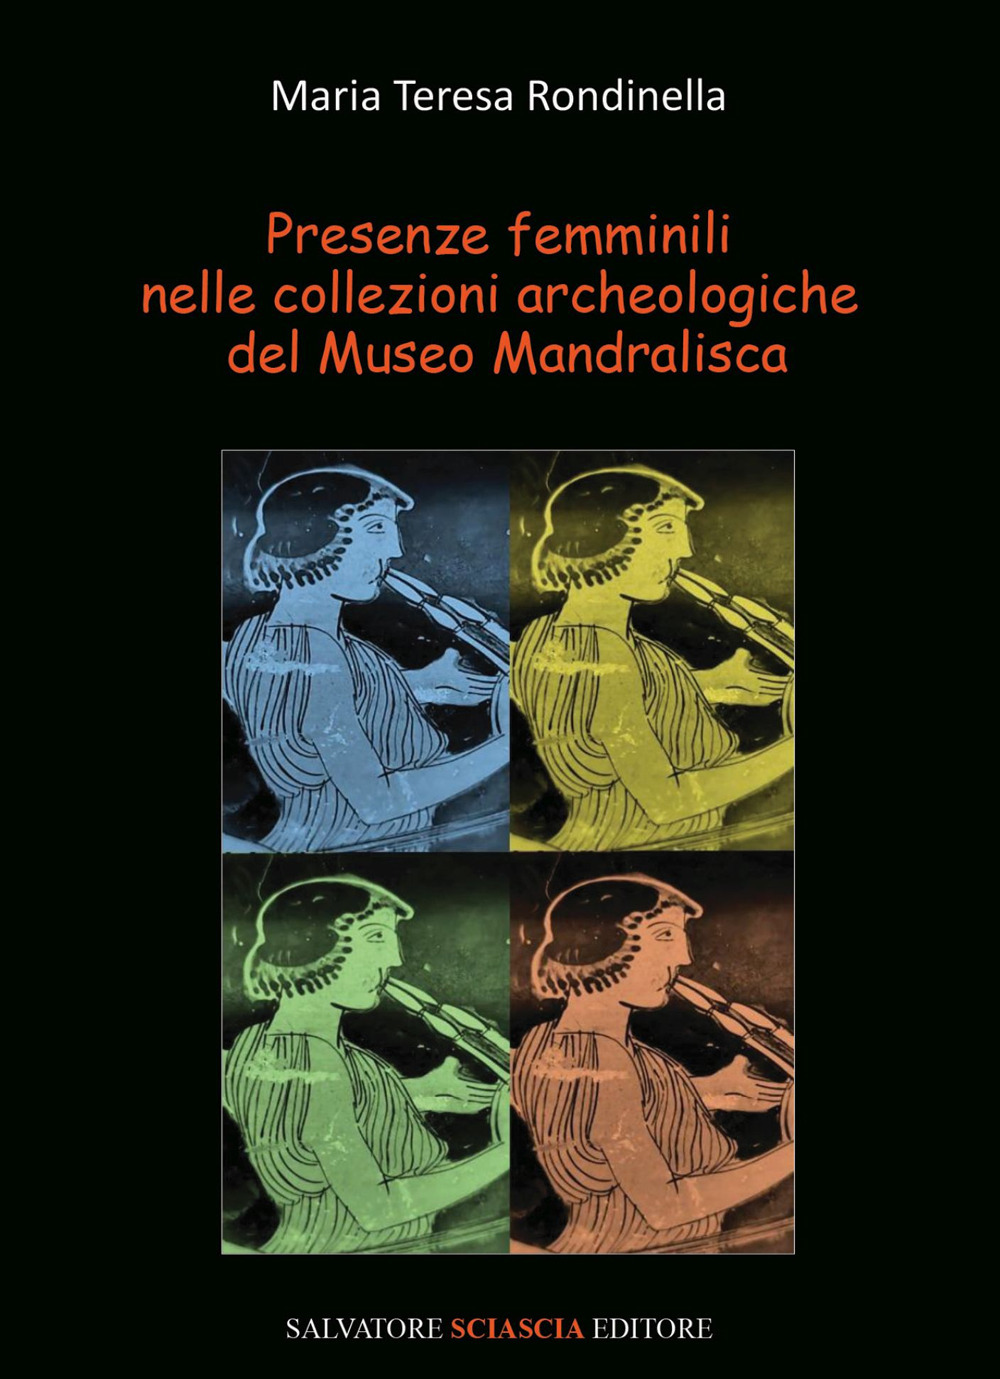 Presenze femminili nelle collezioni archeologiche del Museo Mandralisca